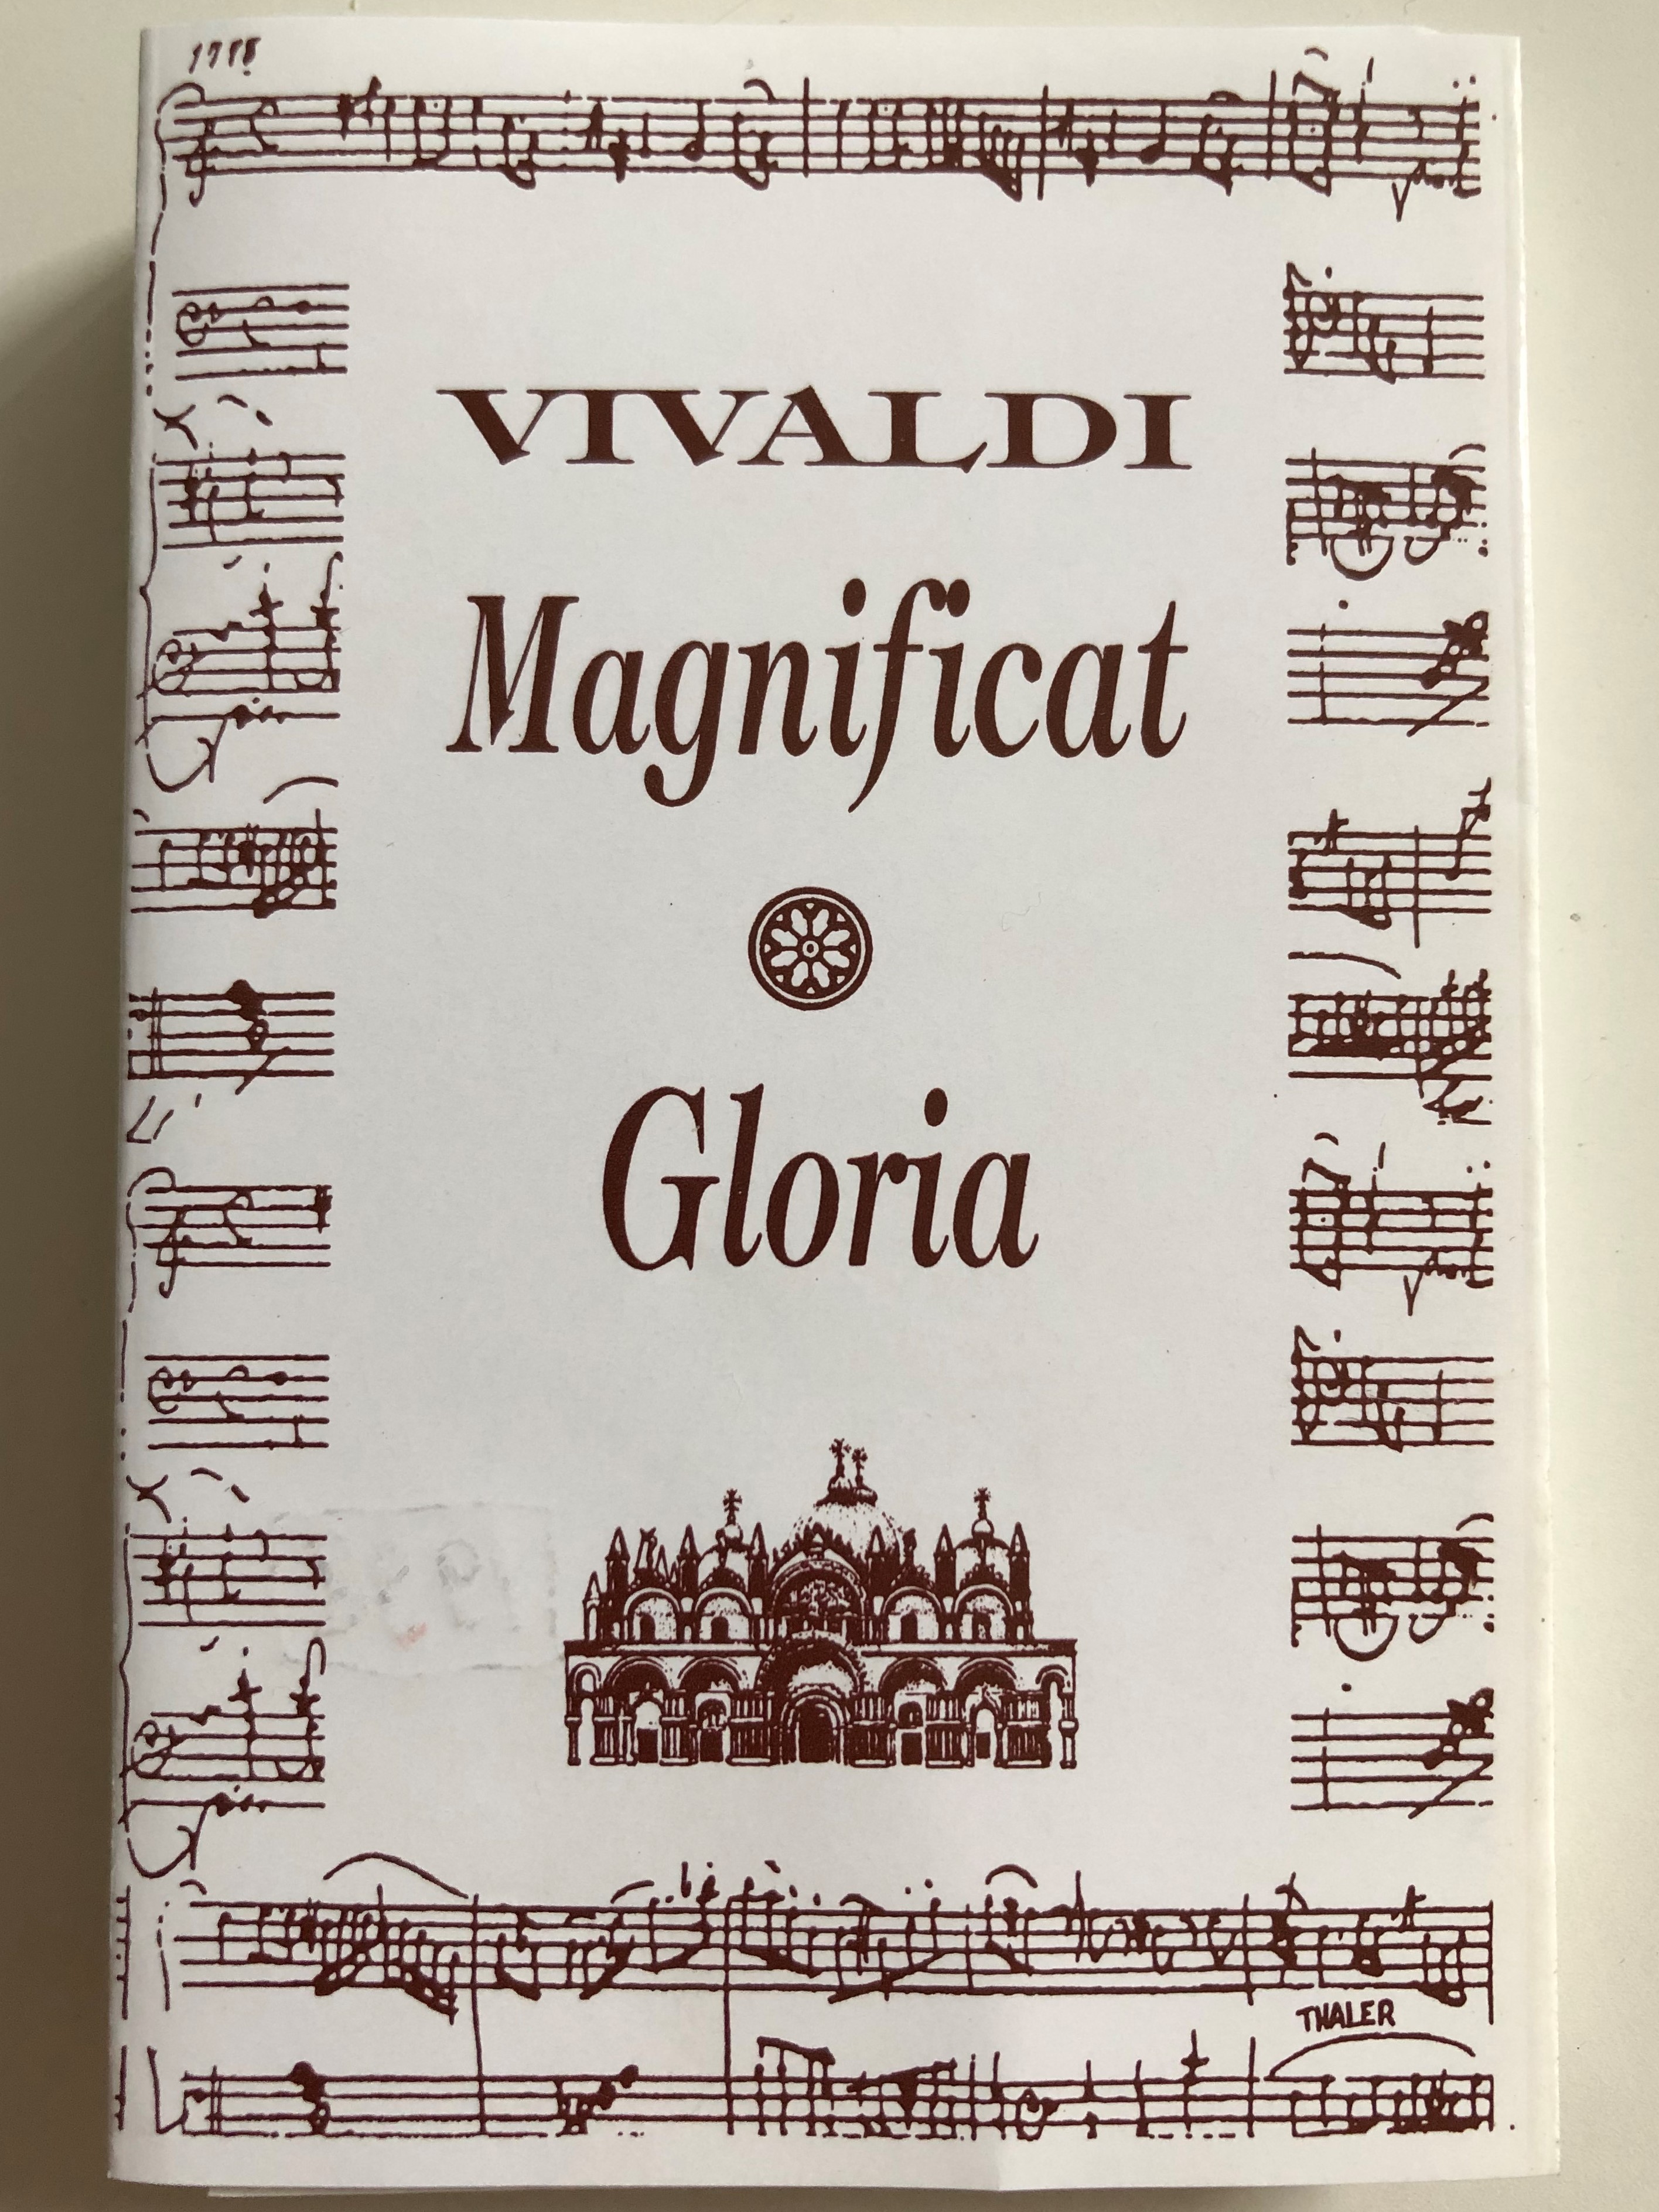 vivaldi-magnificat-gloria-musica-sacra-nek-s-zenekar-allegro-thaler-cassette-stereo-1-.jpg